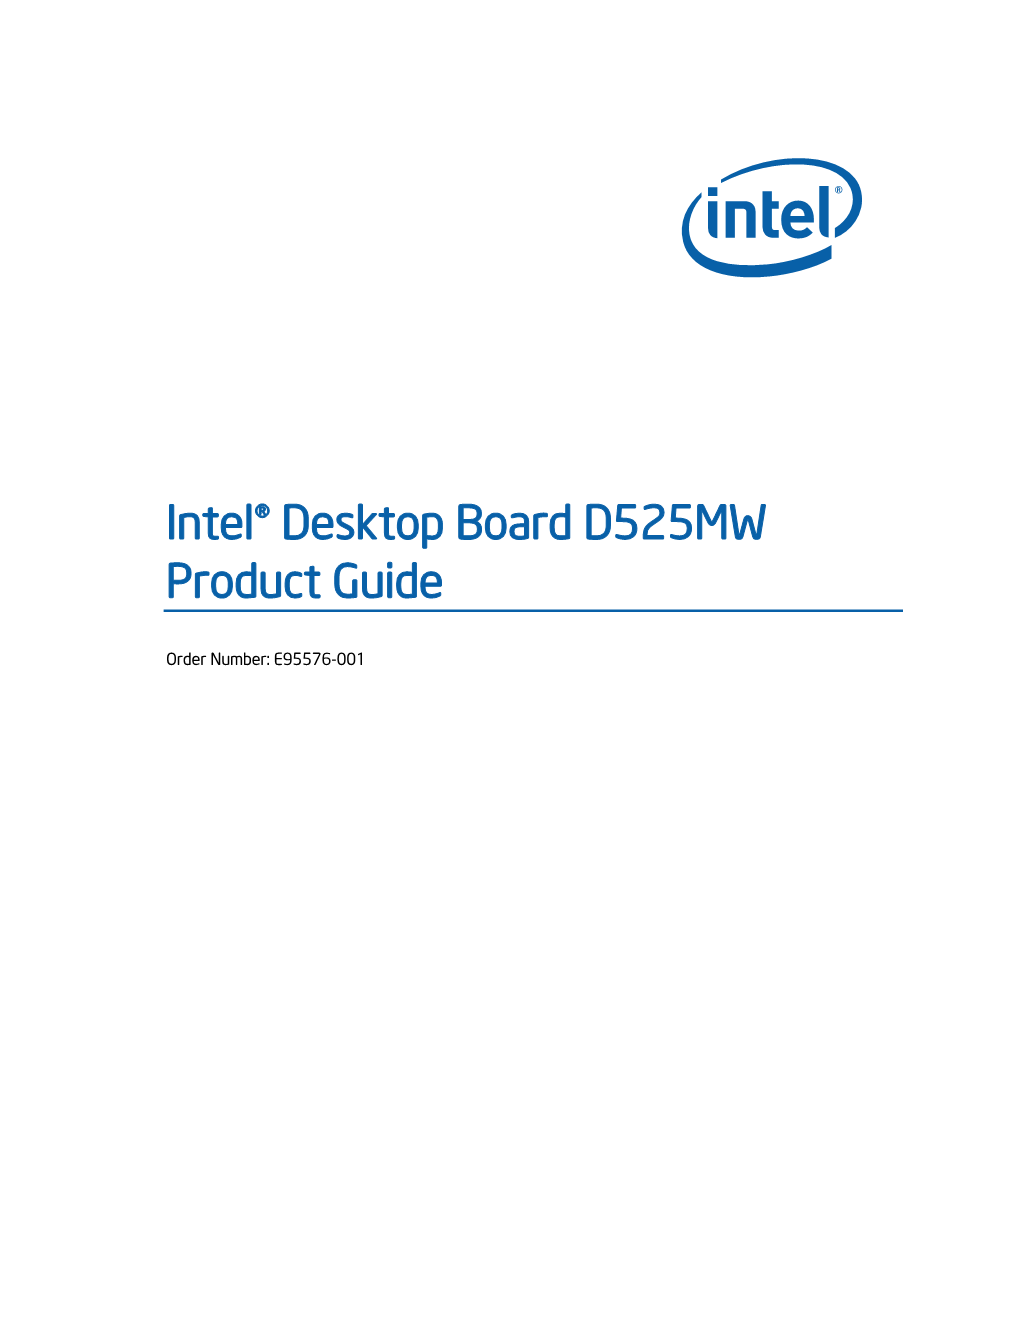 Intel® Desktop Board D525MW Product Guide